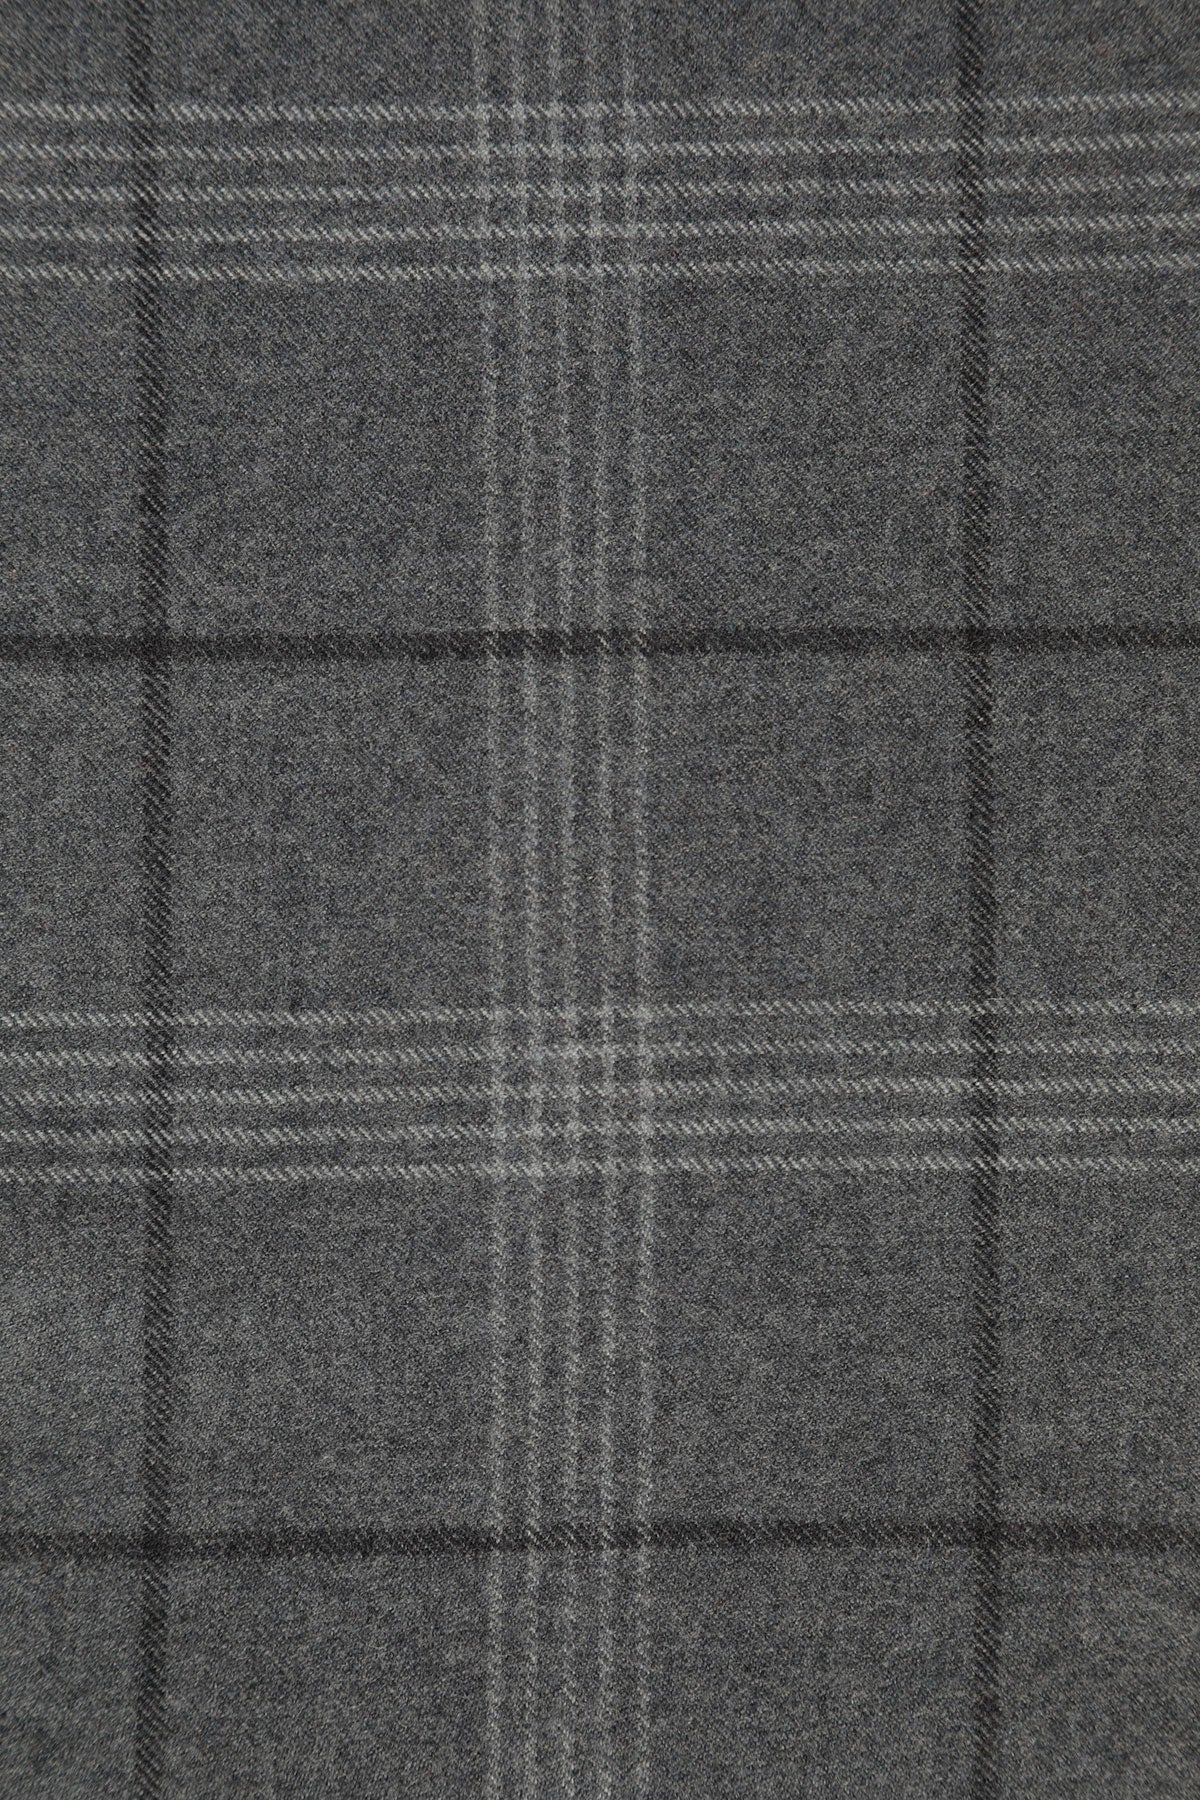 Seren Extra Fine Merino Wool Fabric in Smoke 694424207